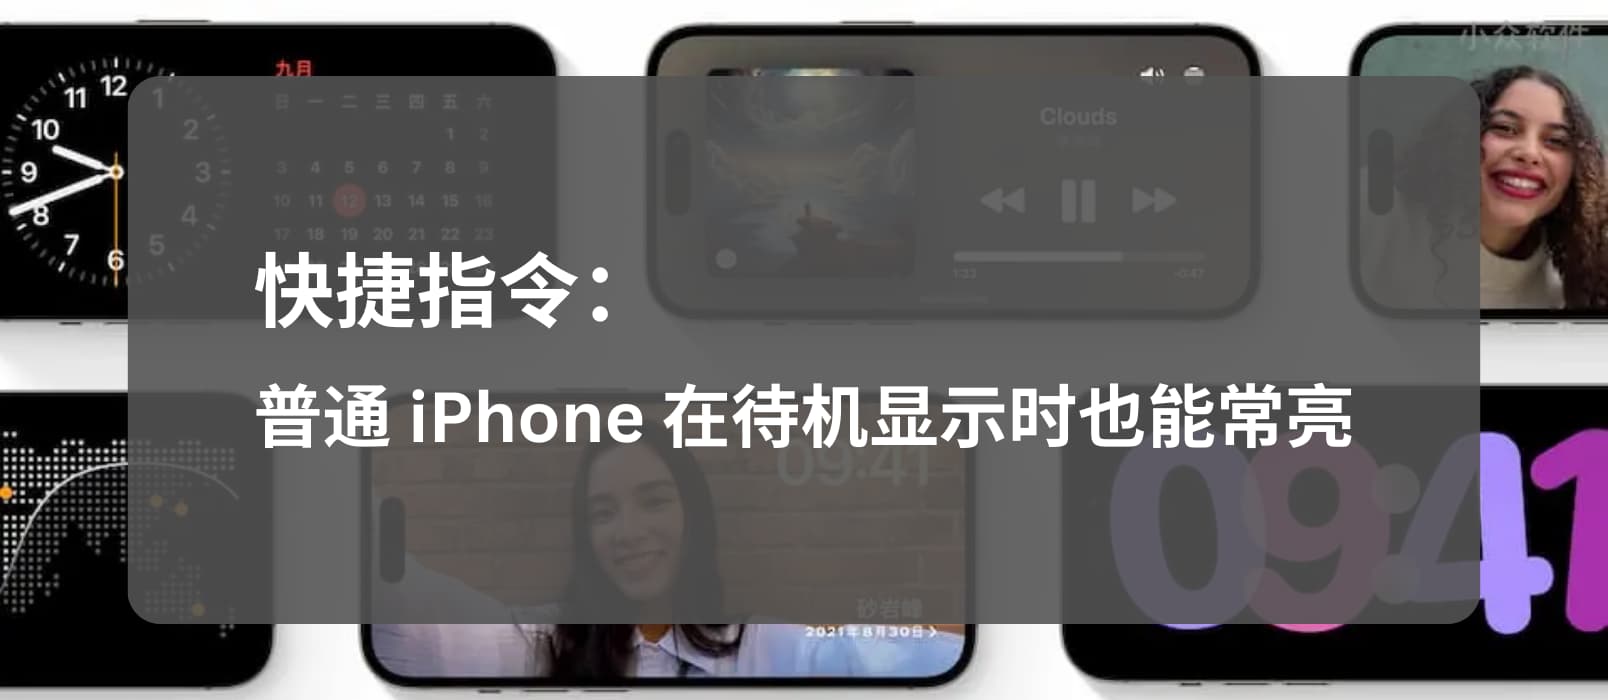 让 iOS 17 「待机显示」适配普通 iPhone（非 Pro/Max），屏幕在充电时常亮 1